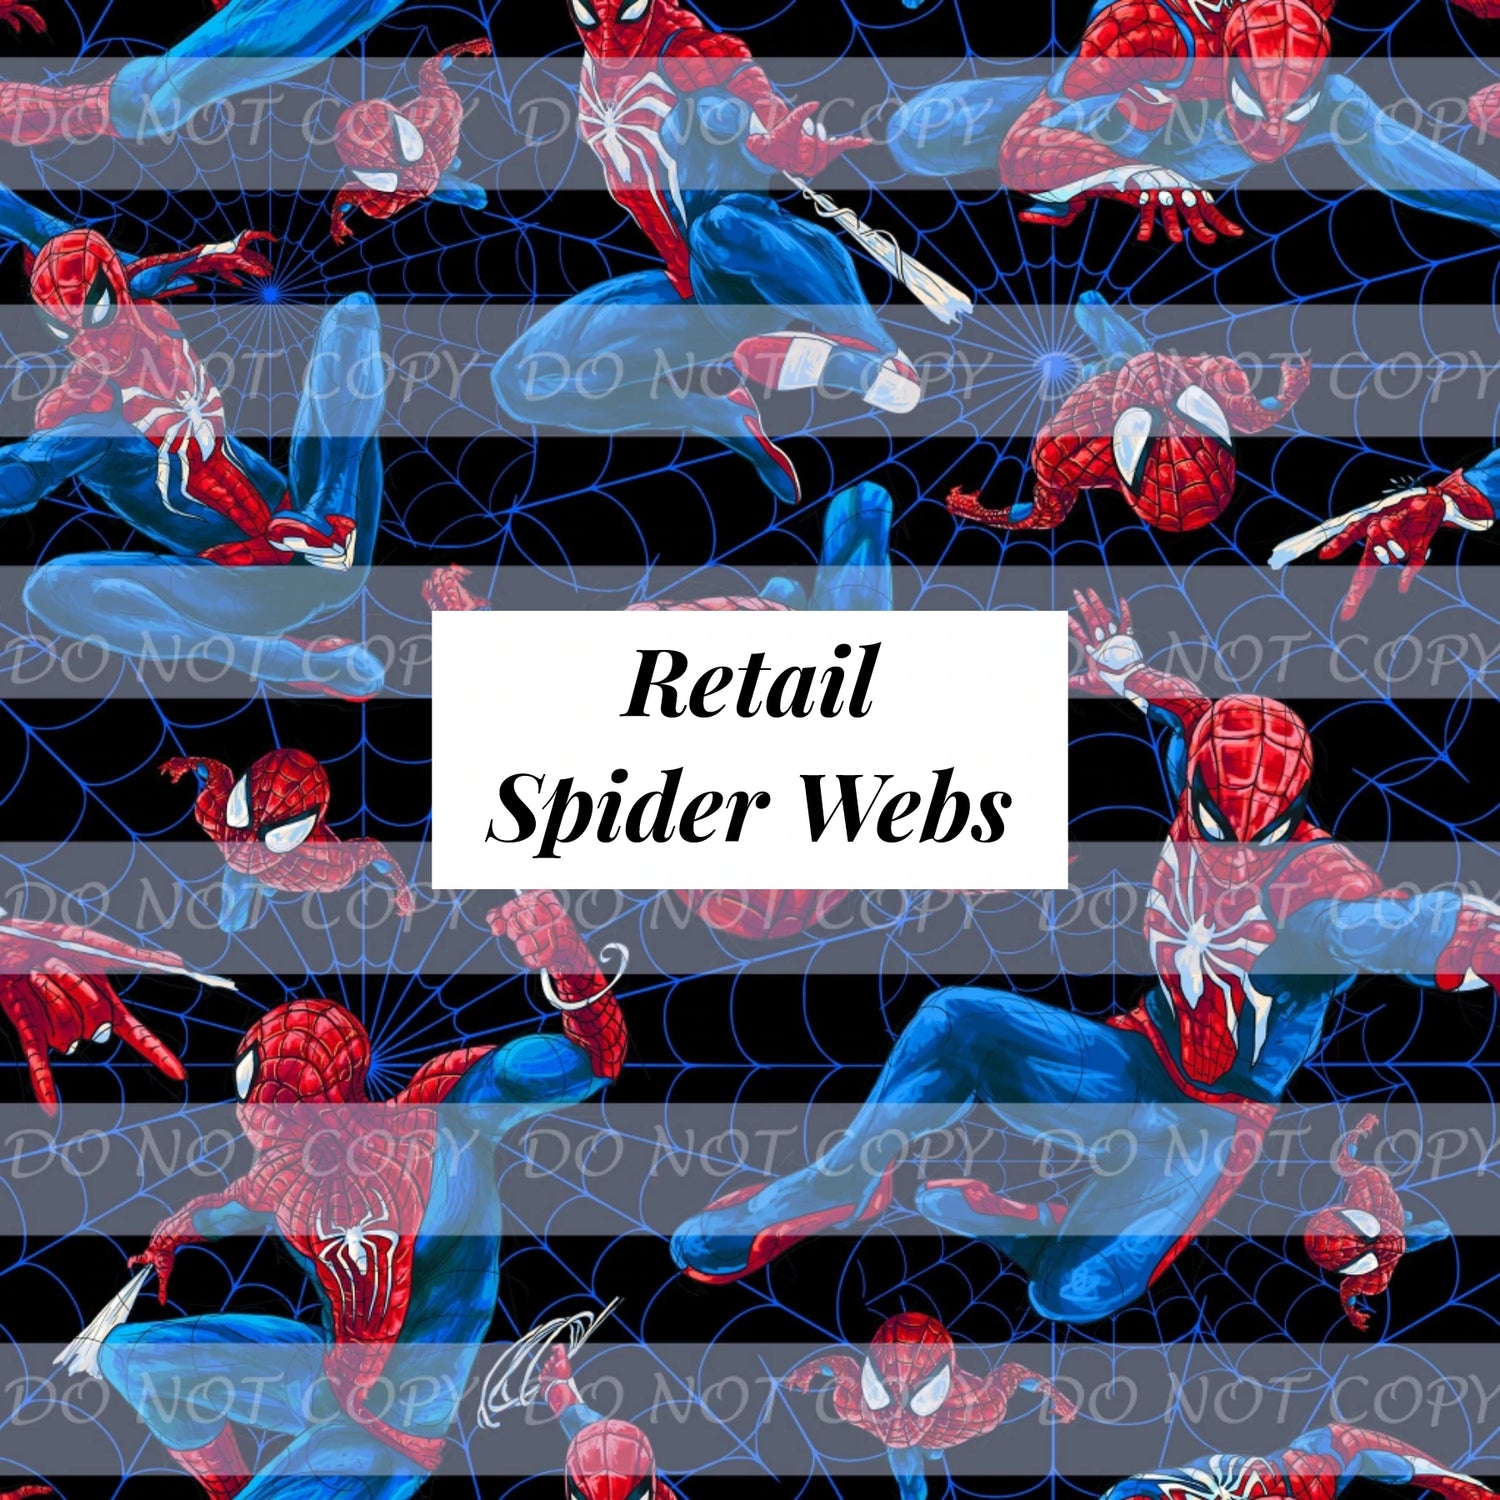 Retail Spider Webs